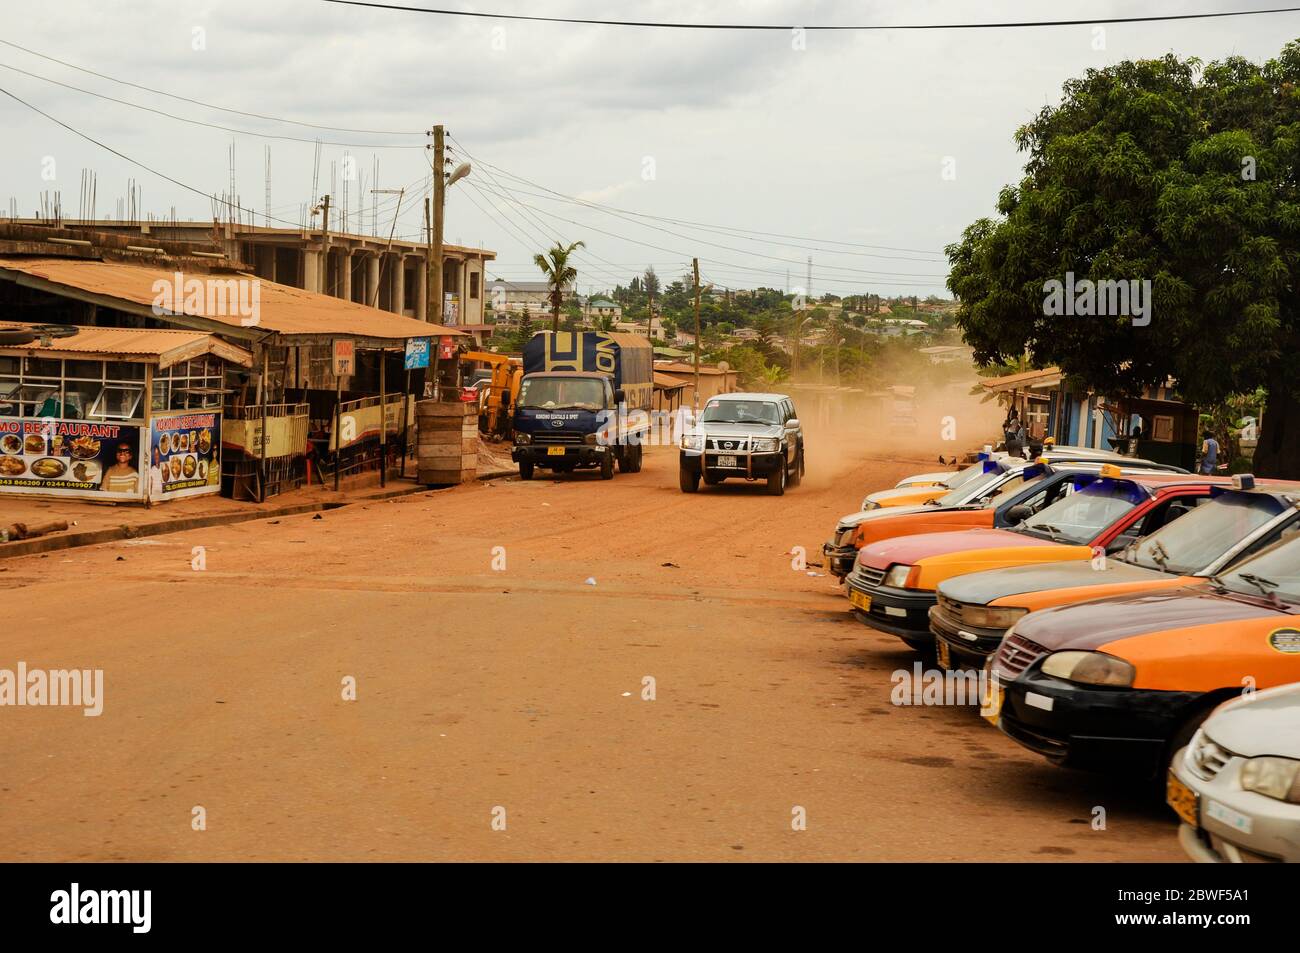 Eine Schotterstraße, die durch ein armes afrikanisches Dorf führt - Accra, Ghana, Afrika Stockfoto